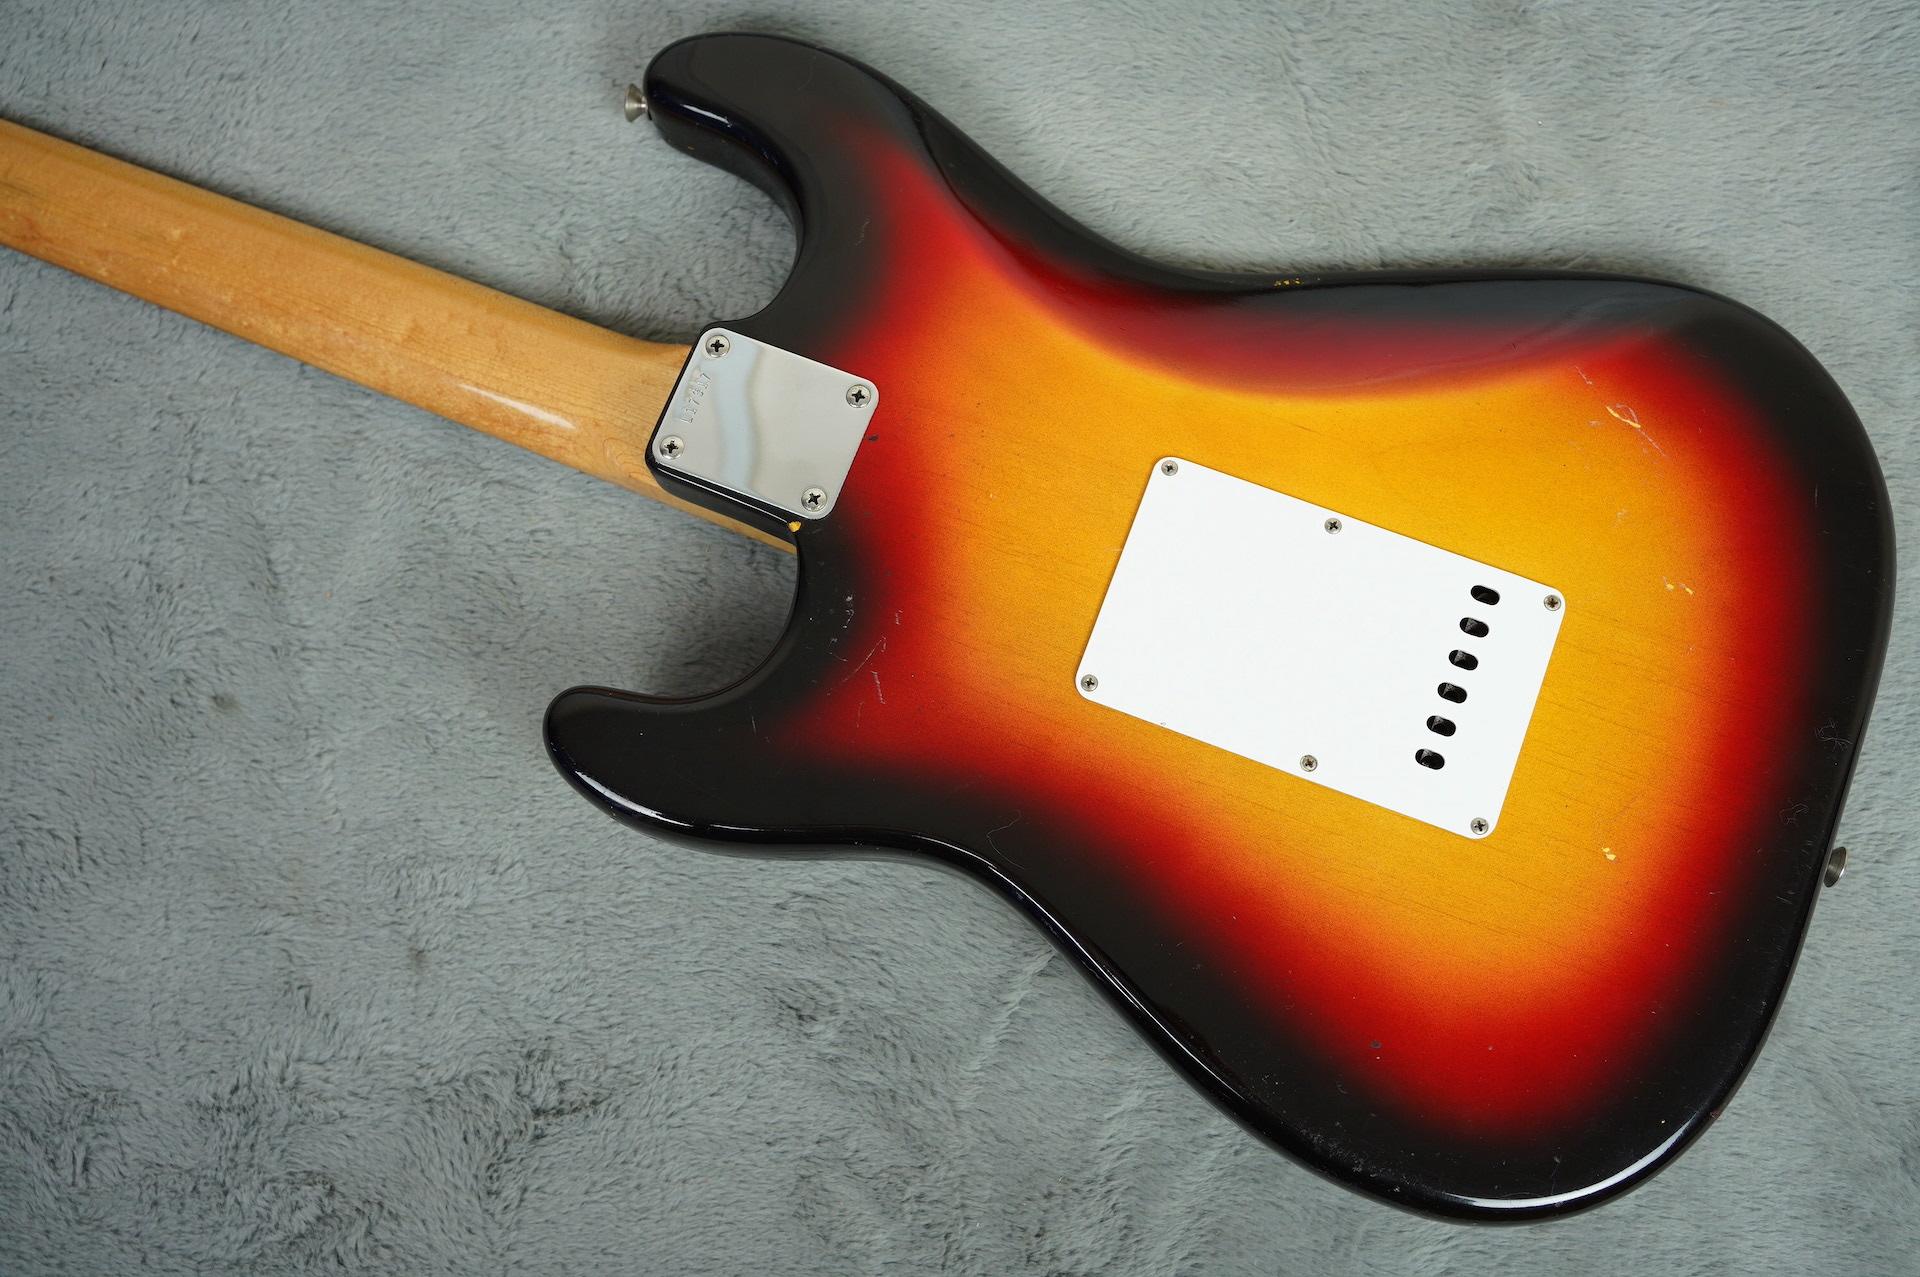 1963 Fender Stratocaster Sunburst